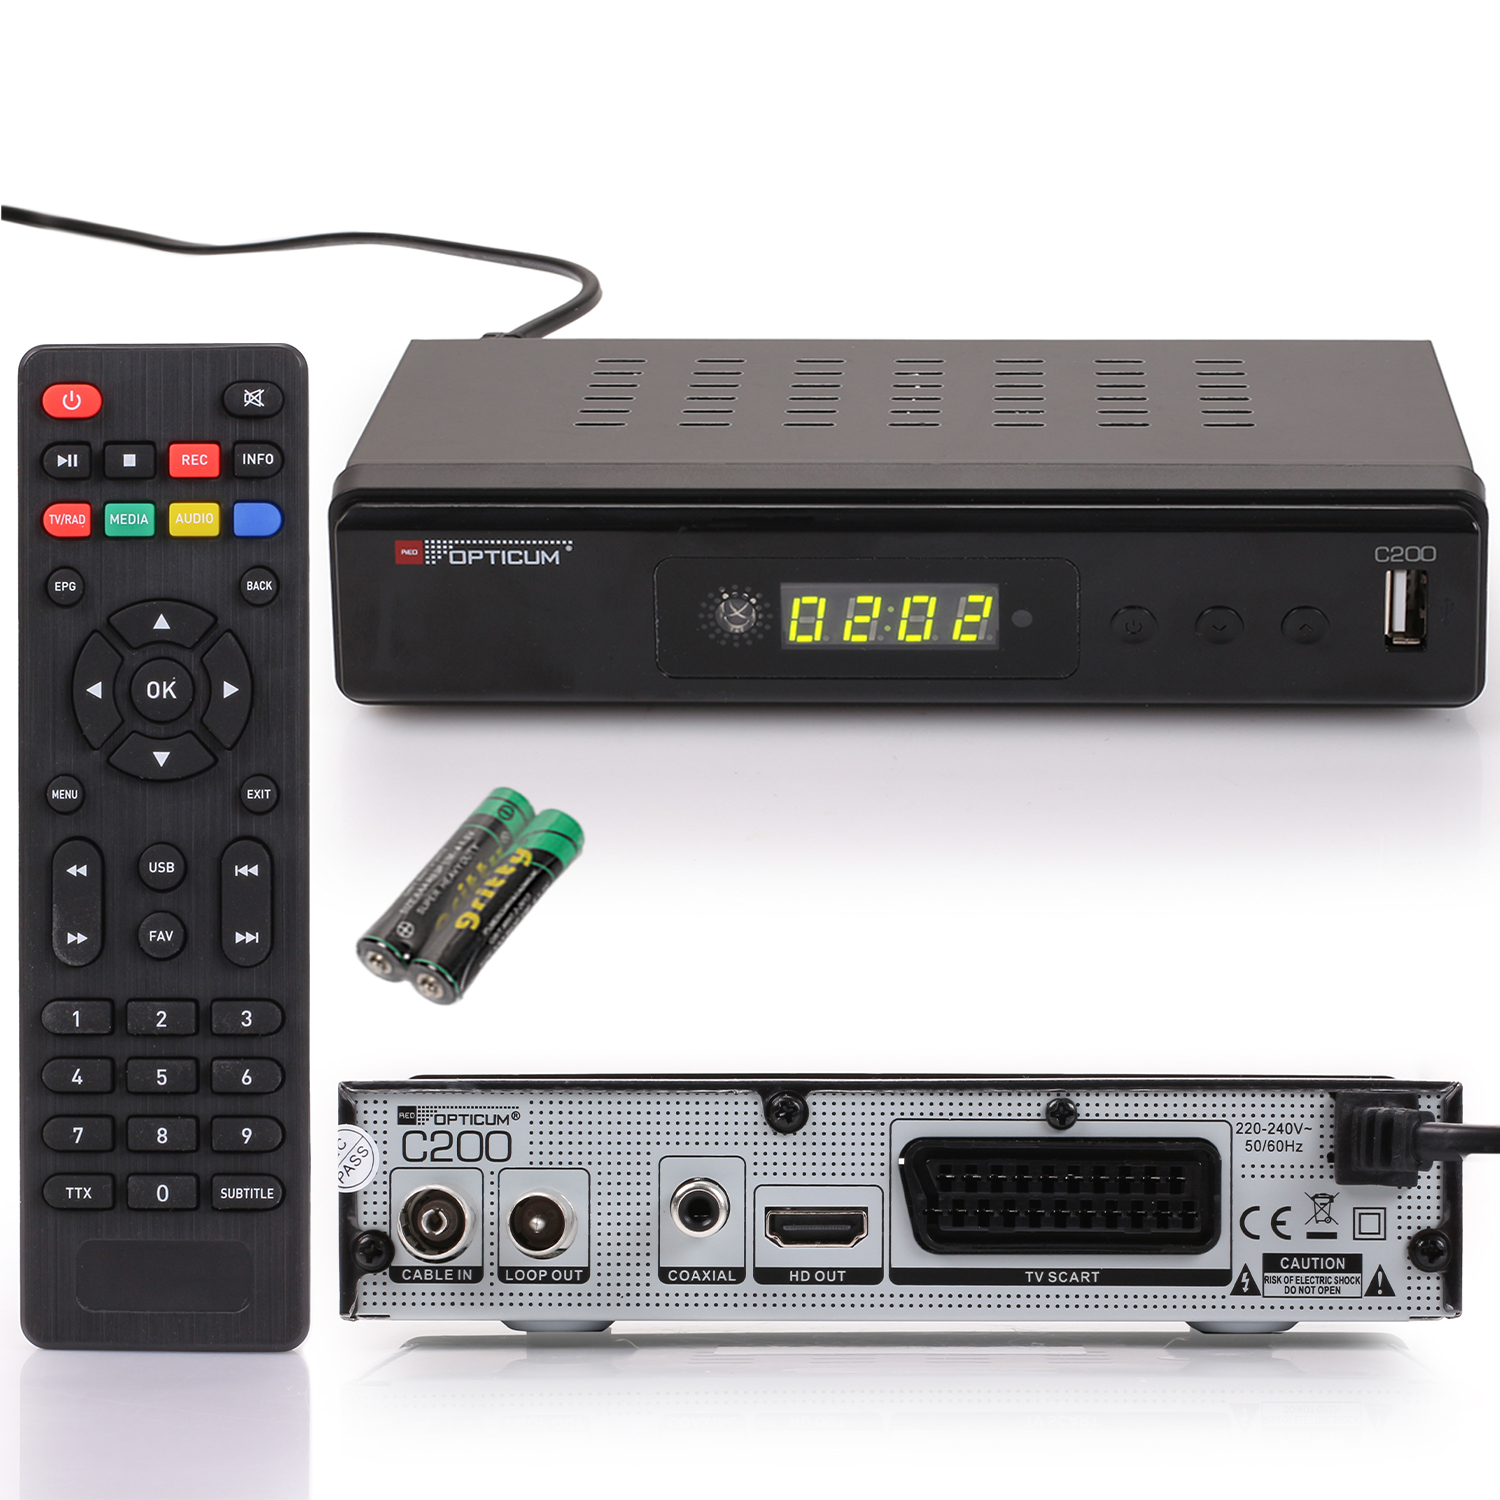 DVB-C, PVR EPG DVB-C HD Aufnahmefunktion I - OPTICUM HDMI-USB-SCART RED HD DVB-C2, Digitaler Kabelreceiver - Receiver PVR-Funktion, (HDTV, Kabel-Receiver C200 schwarz) mit